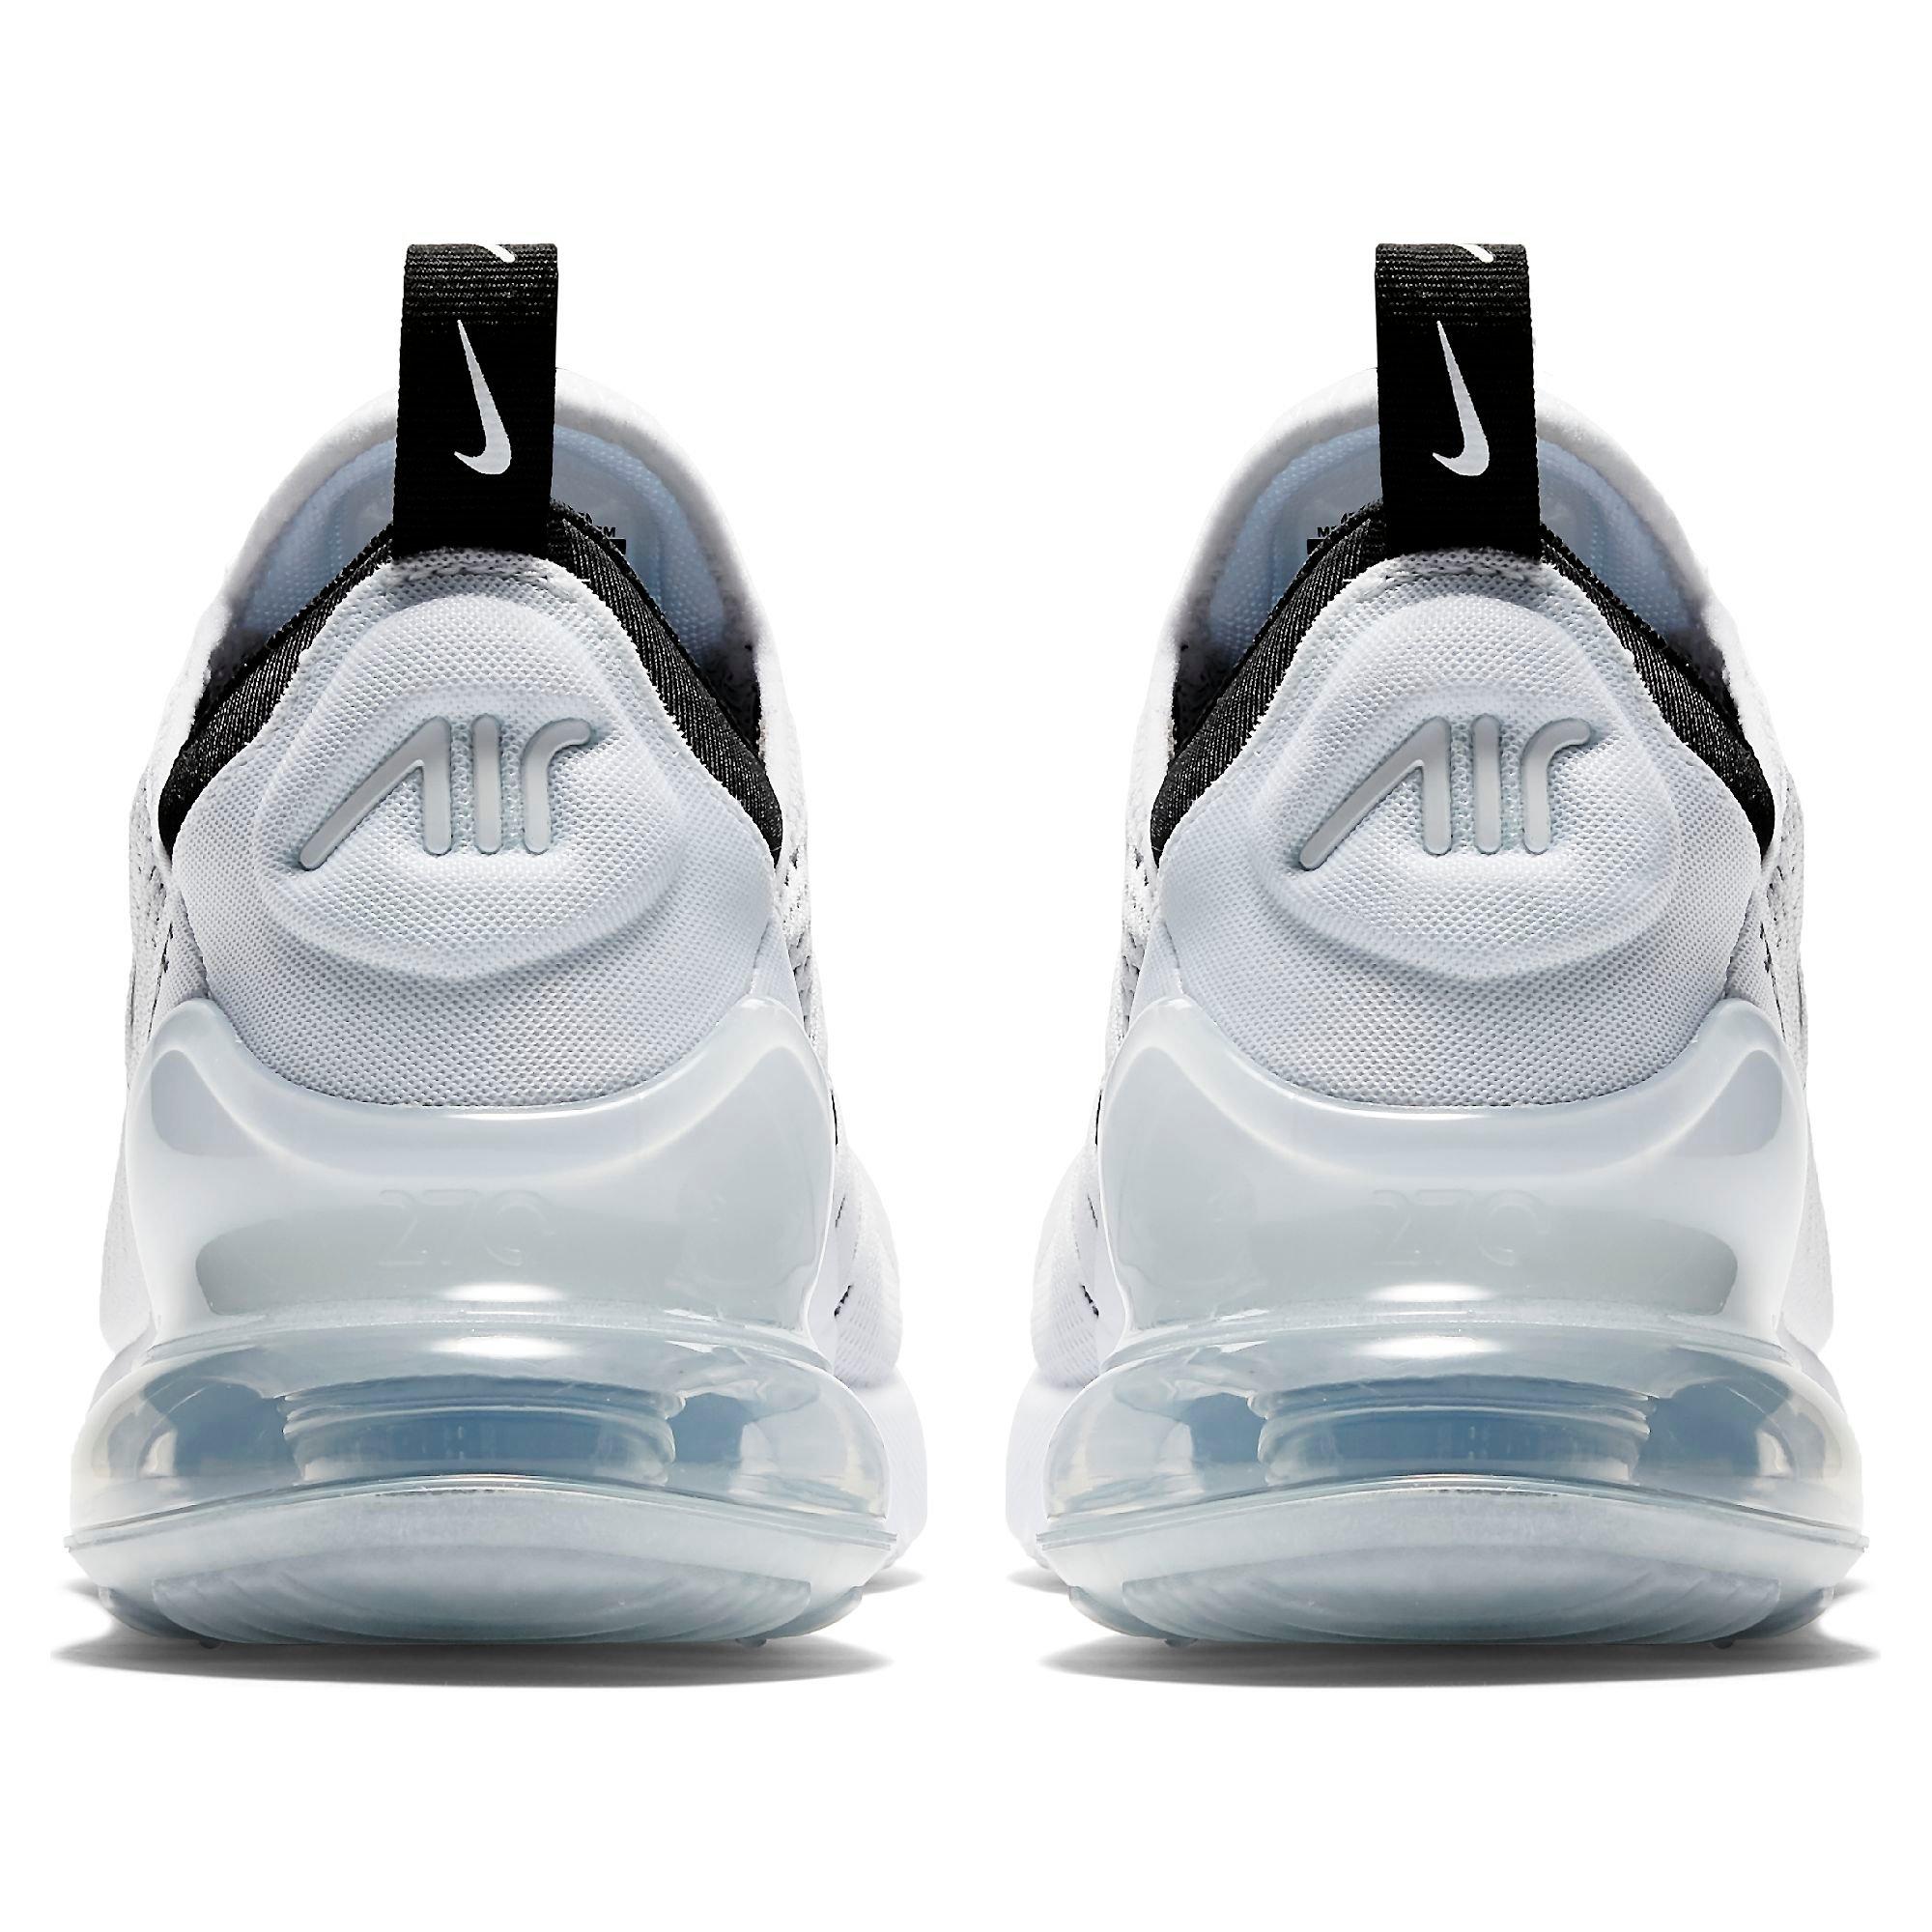 Odiseo Relación Manía Nike Air Max 270 "White/Black" Women's Shoe